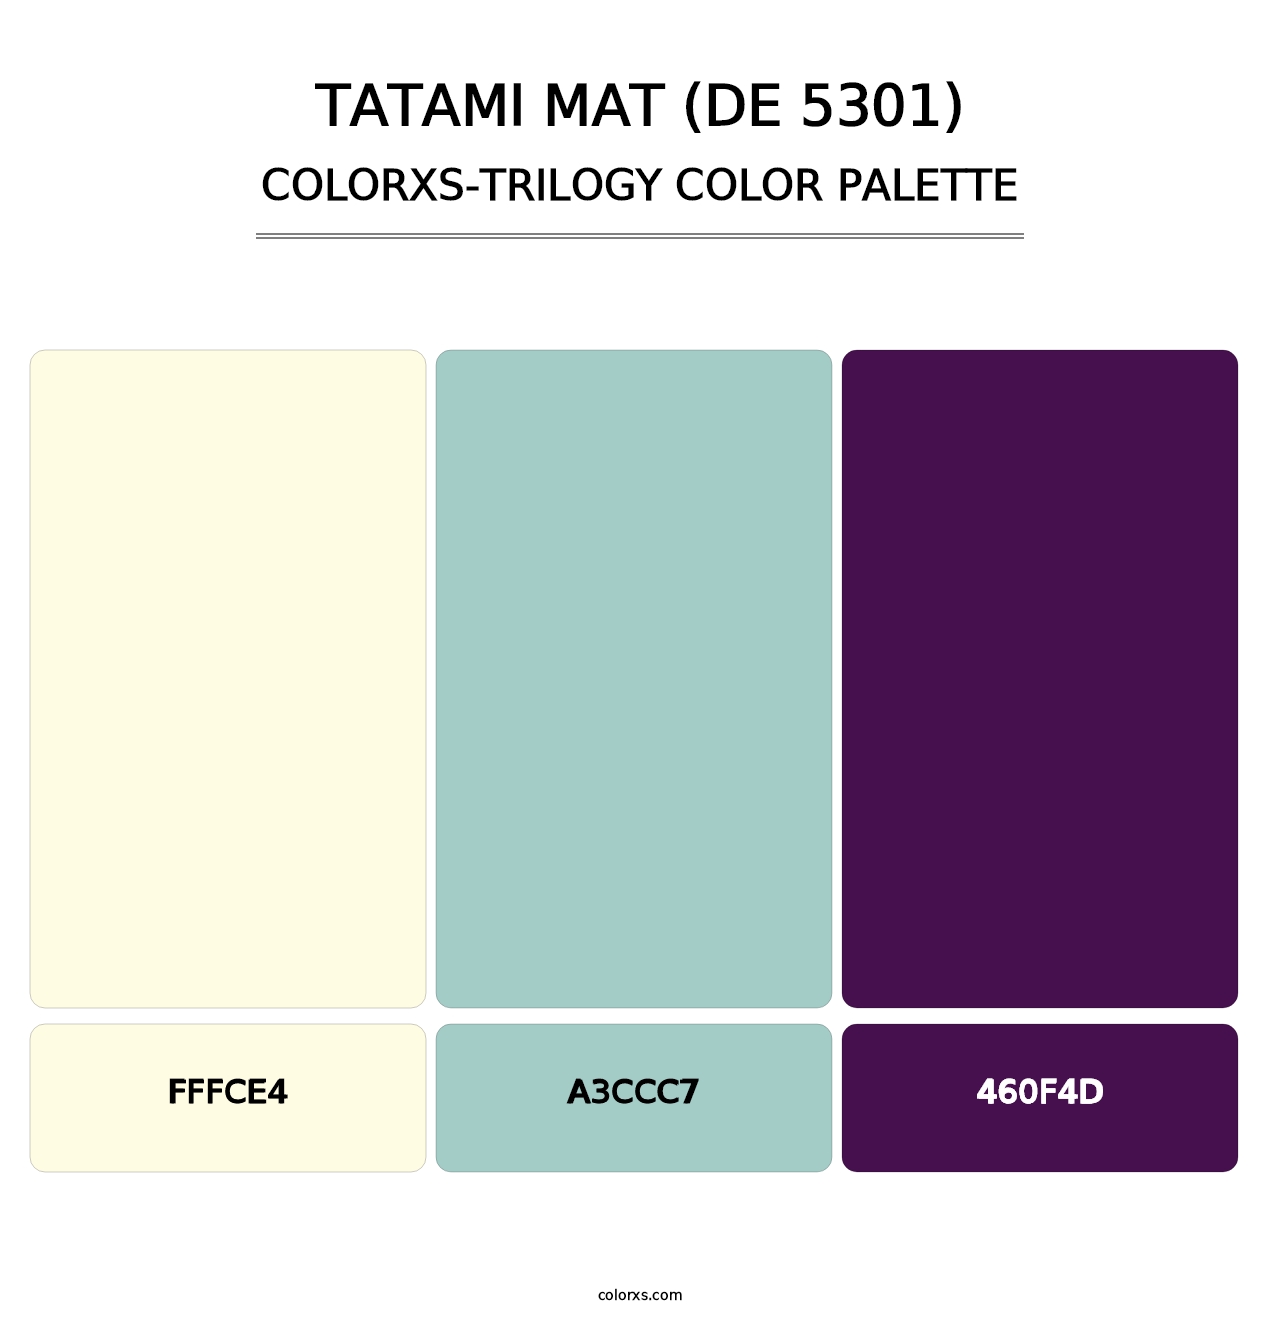 Tatami Mat (DE 5301) - Colorxs Trilogy Palette